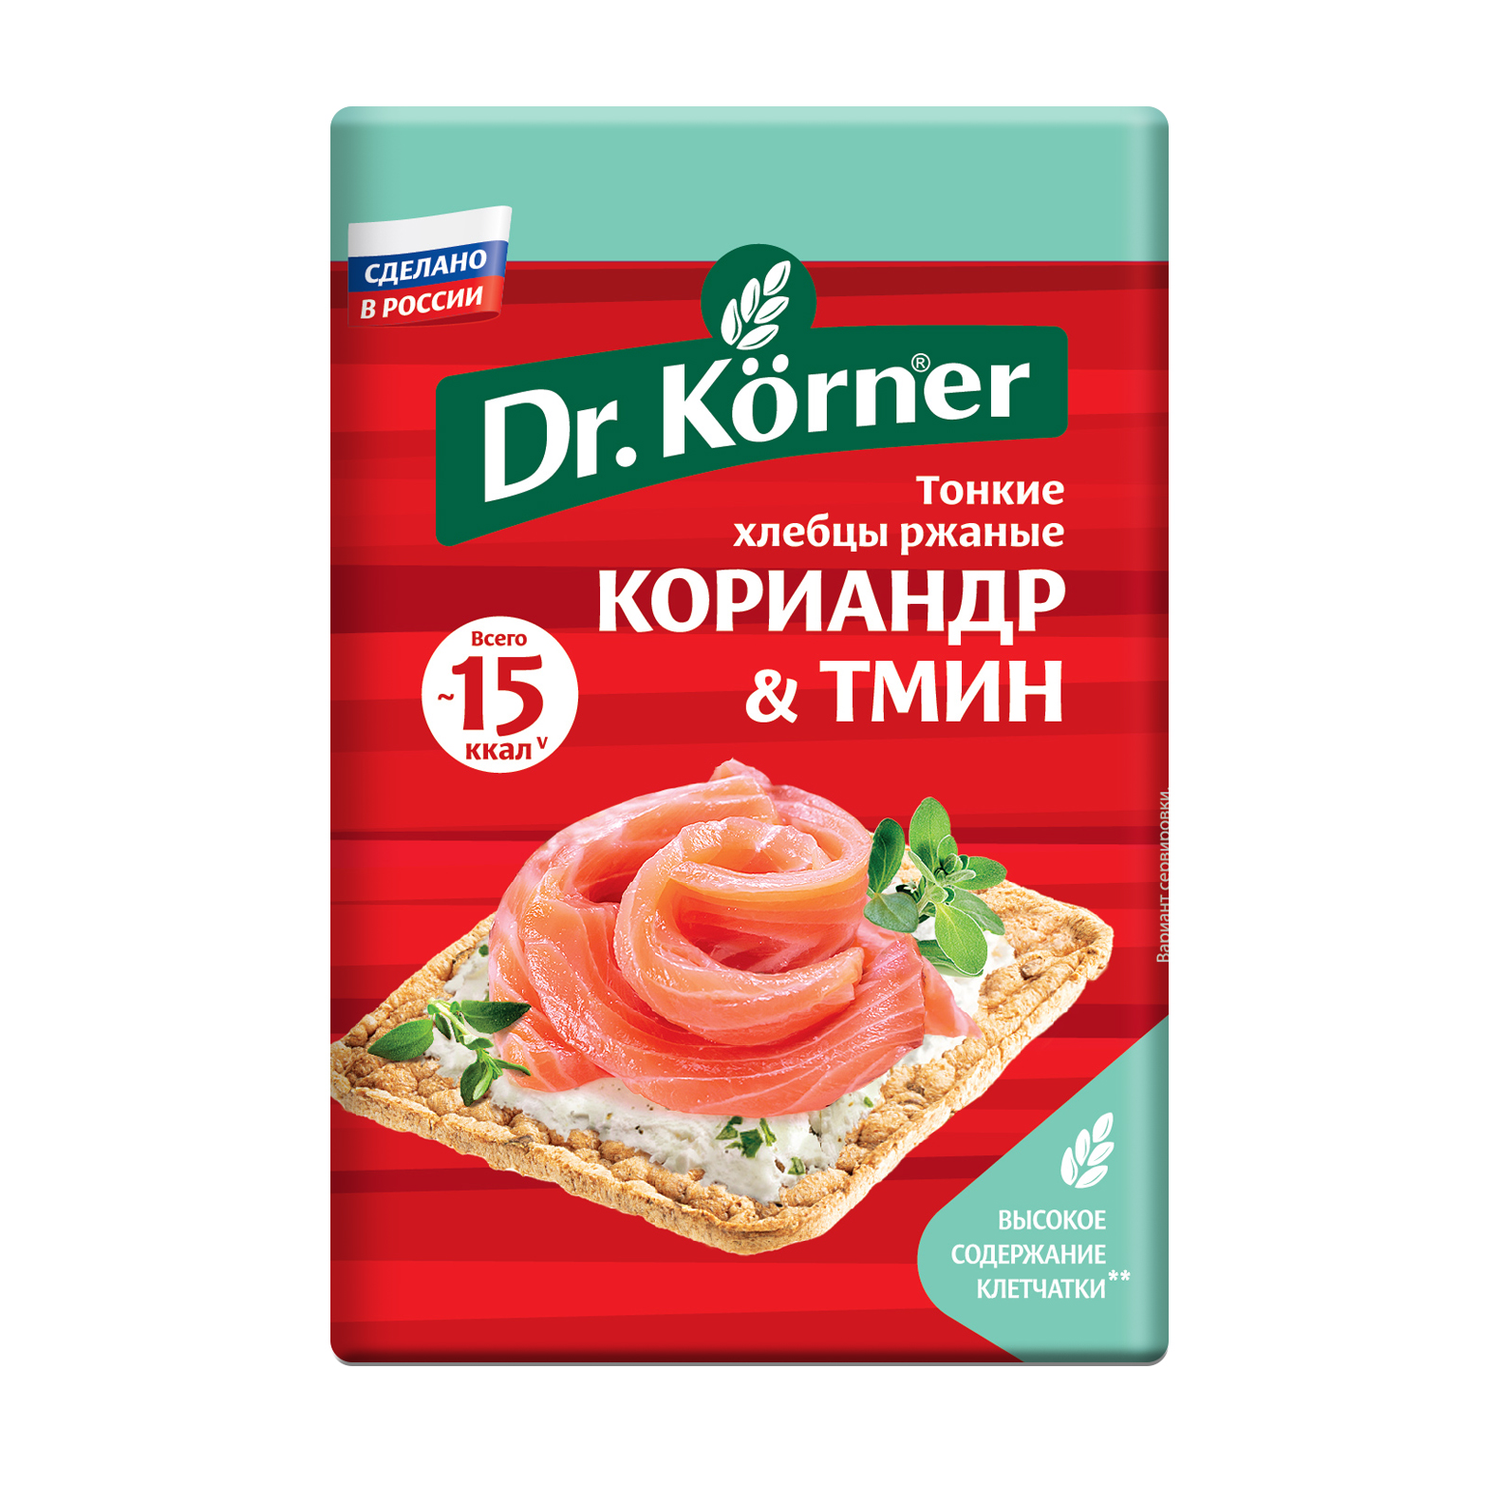 Хлебцы DrKorner Ржаные с кориандром и тмином 10 шт по 100 гр - фото 2